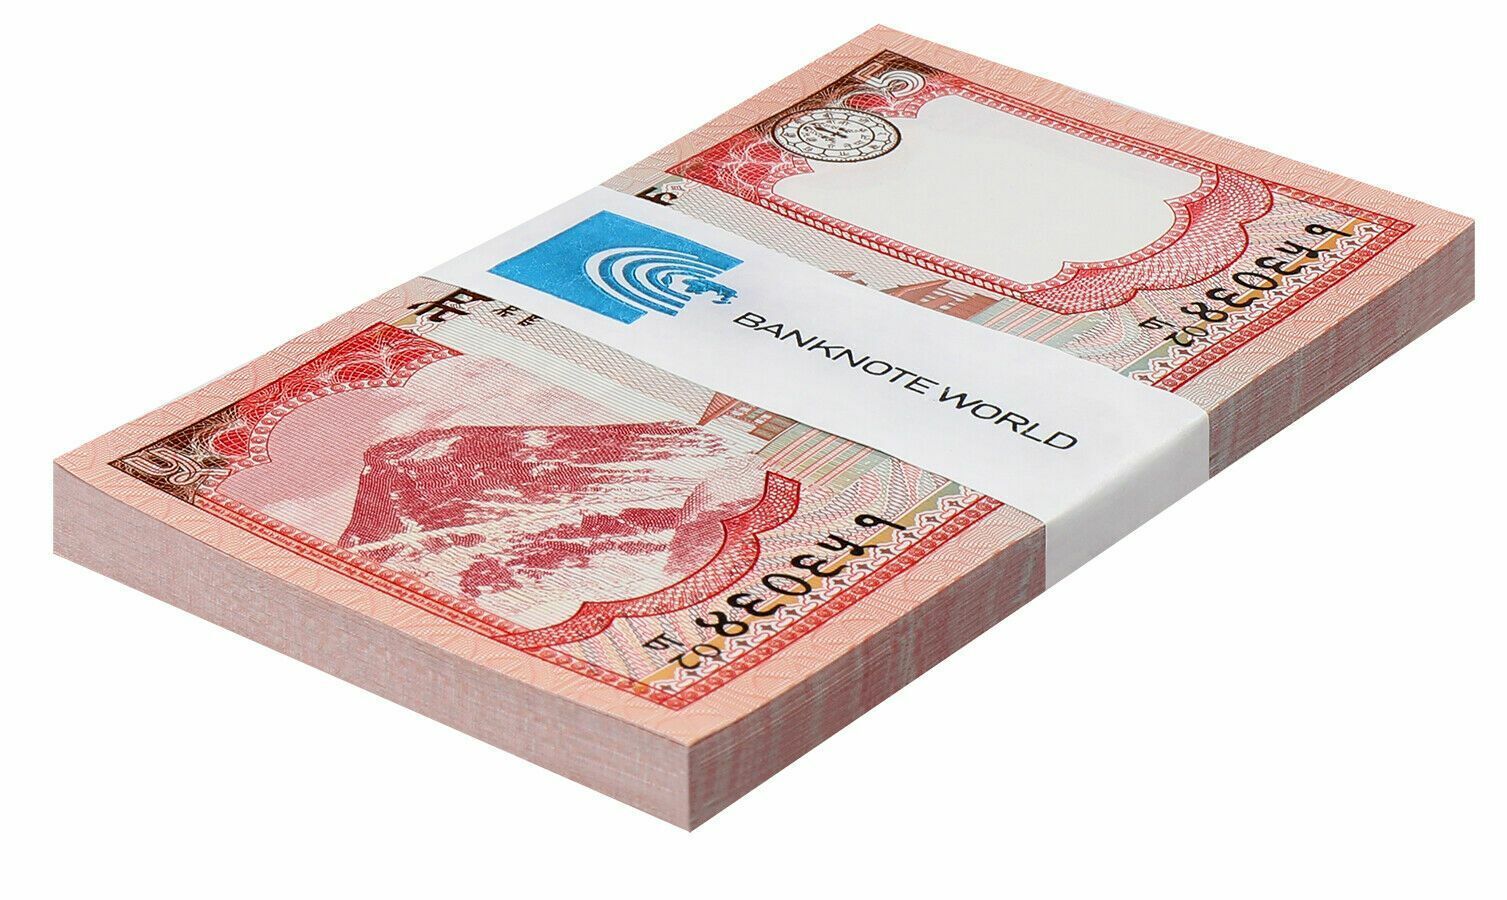 Nepal 5 Rupees, 2017, P-76a, Unc X 100 Pcs Bundle Pack